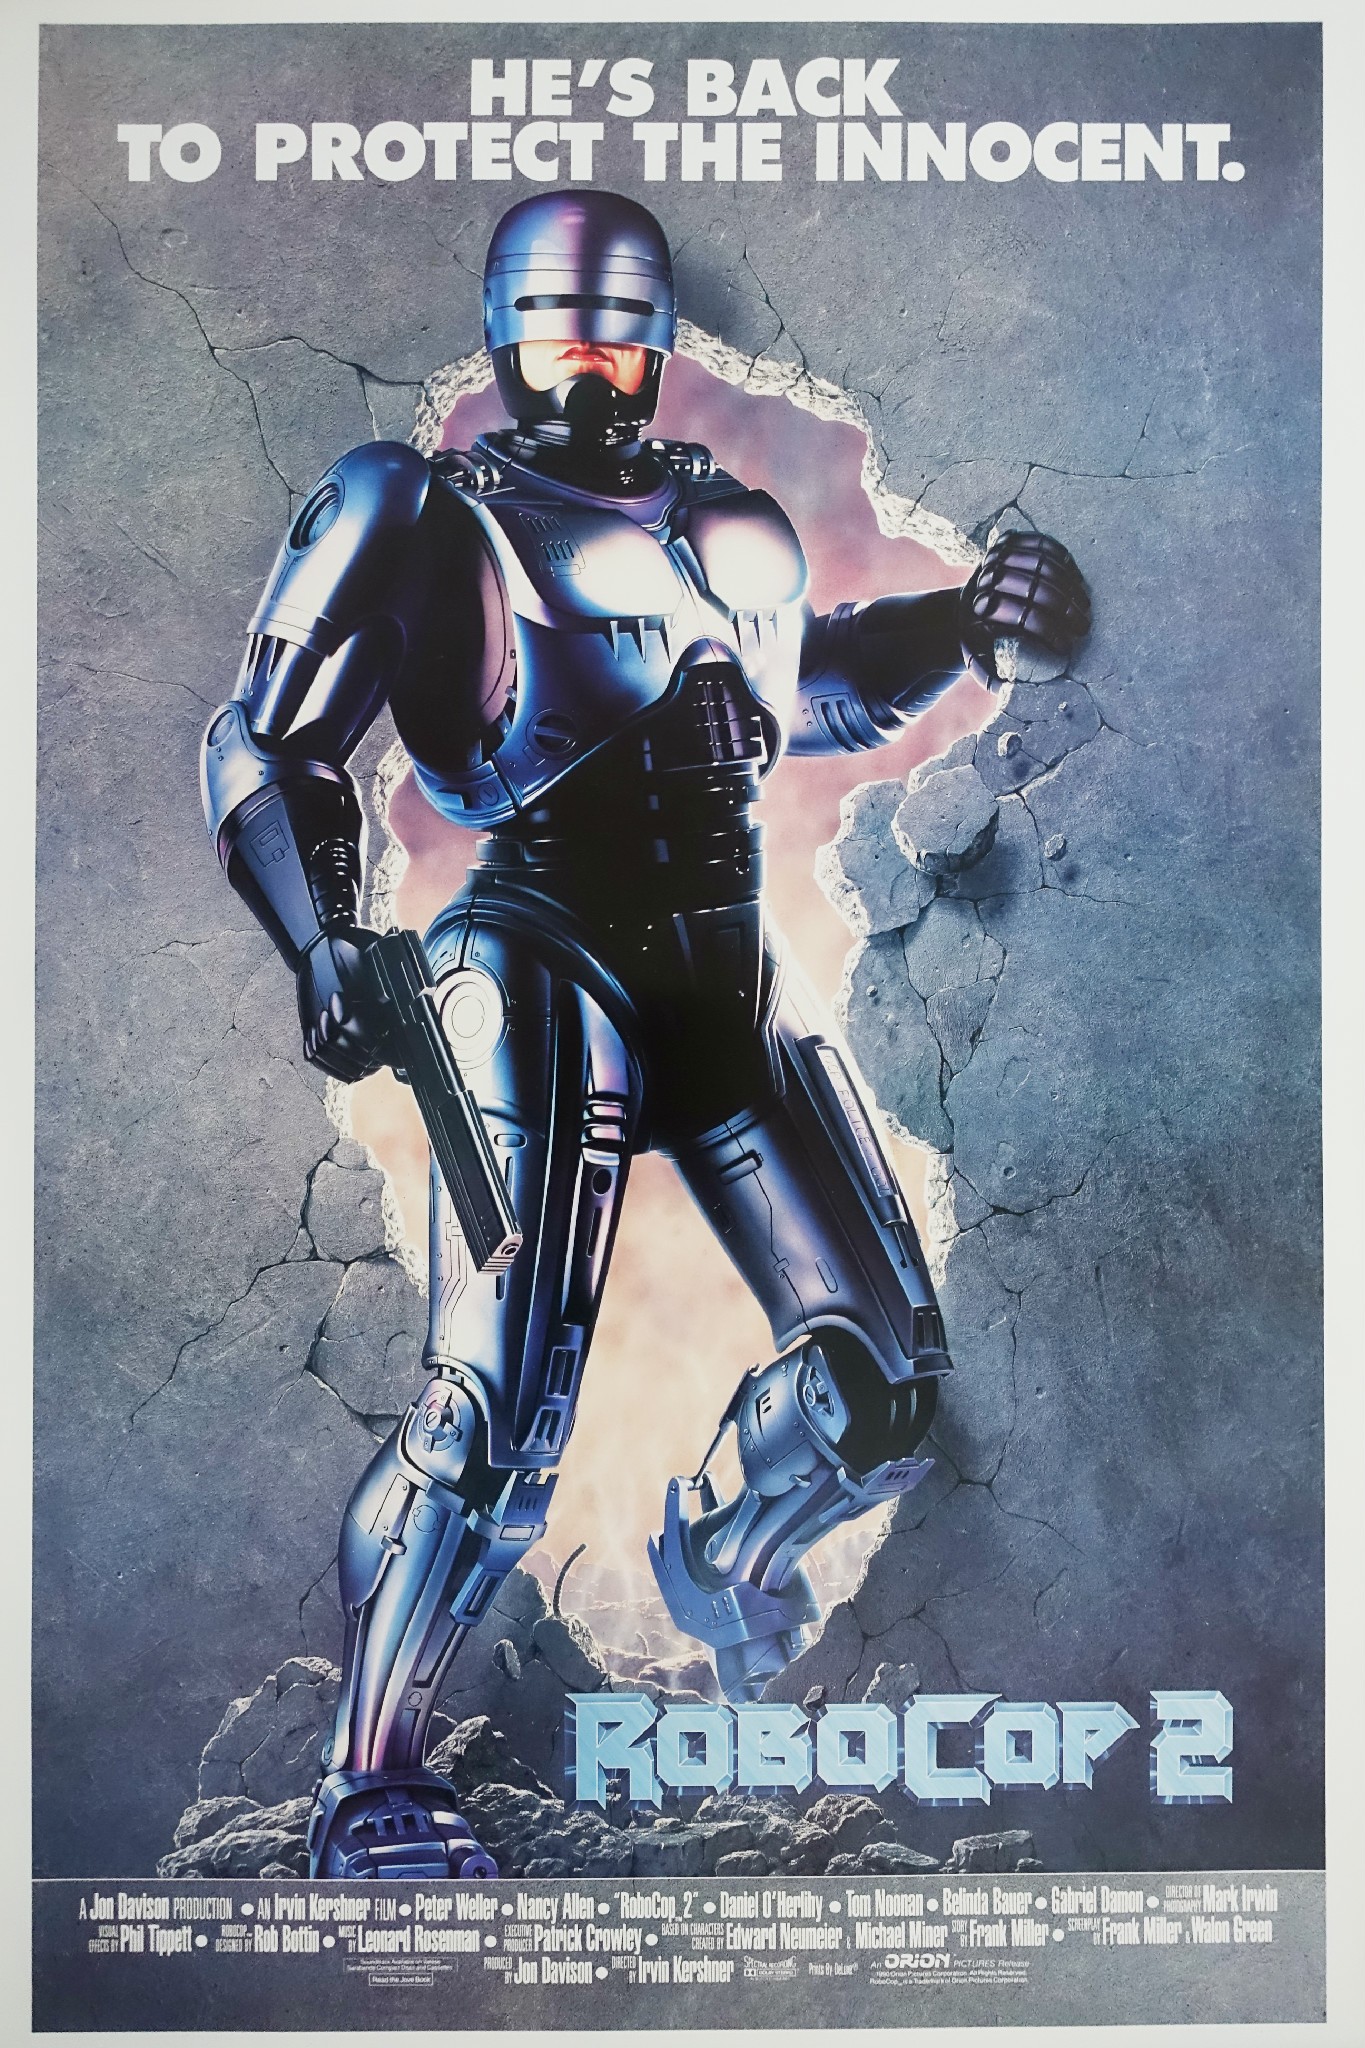 Robocop 2 poster